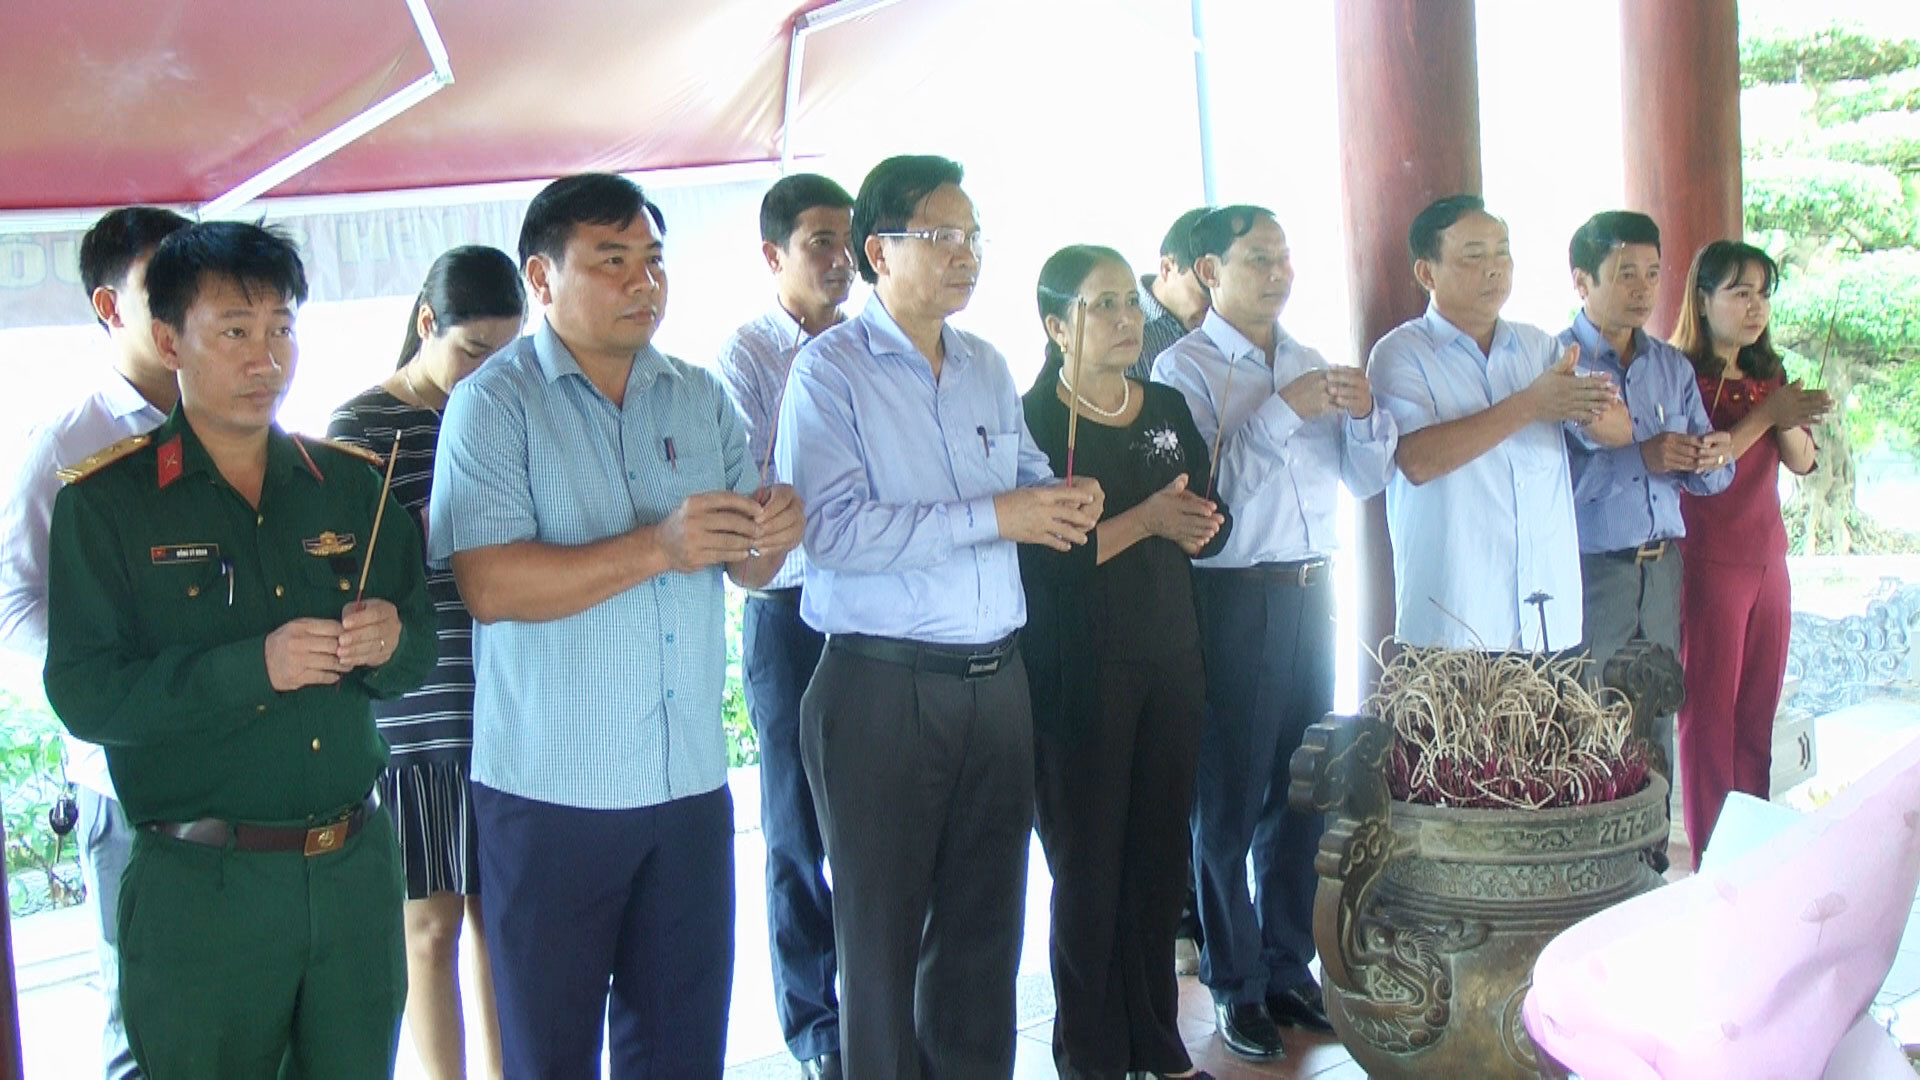 Đoàn đại biểu huyện Yên Thành dâng hương tưởng niệm các anh hùng liệt sỹ tại Khu di tích lịch sửTruông Bồn. Ảnh: Thái Dương